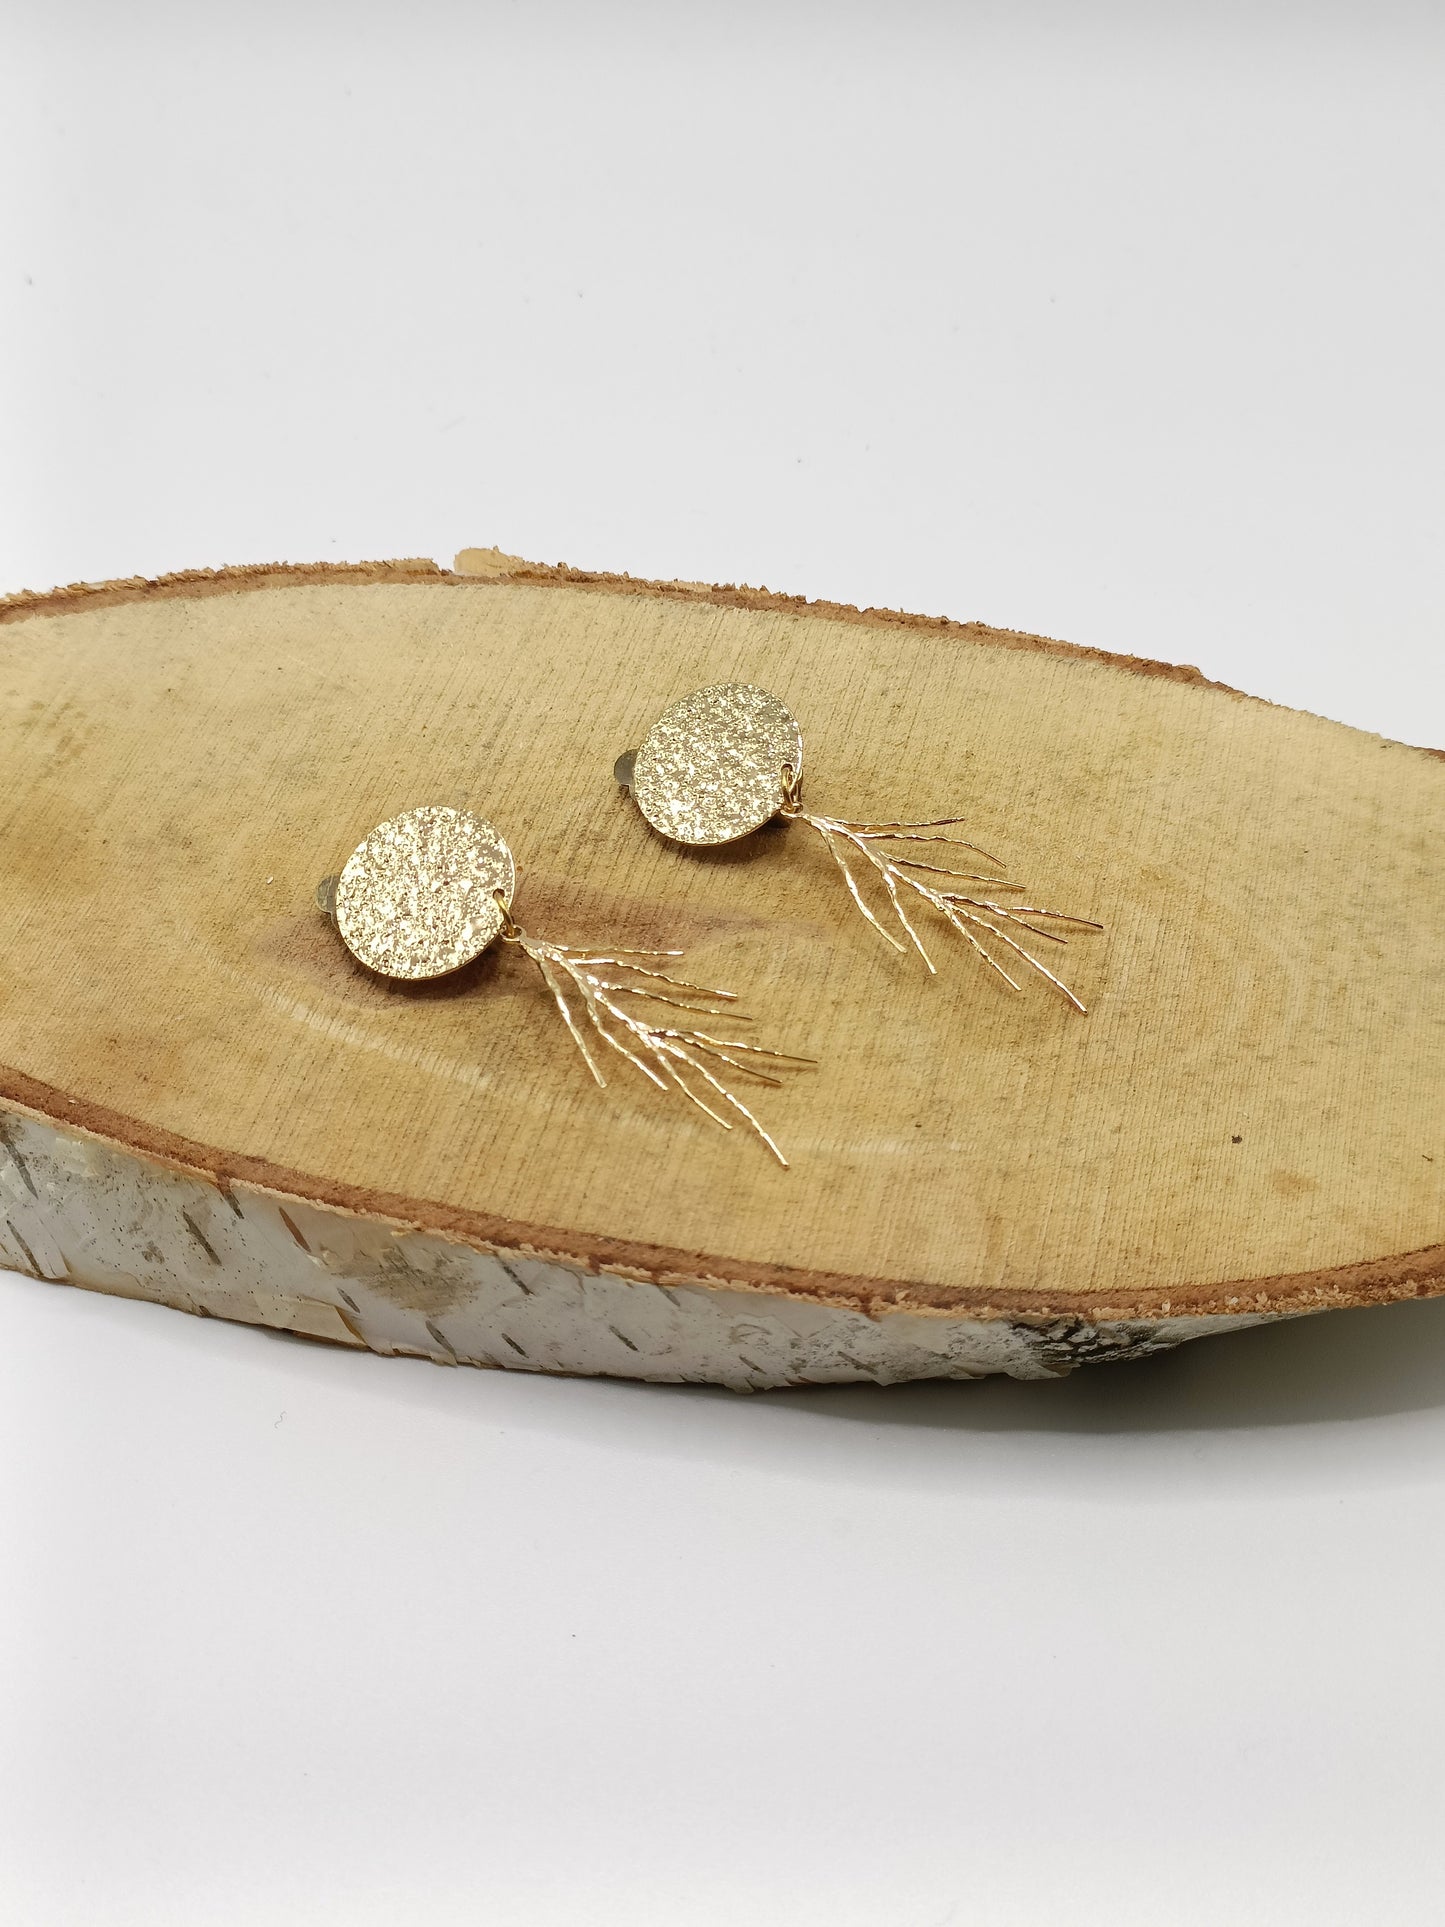 Corail, les boucles d'oreilles clips dorés martelés et branches dorées à l'or fin , modernes et épurées